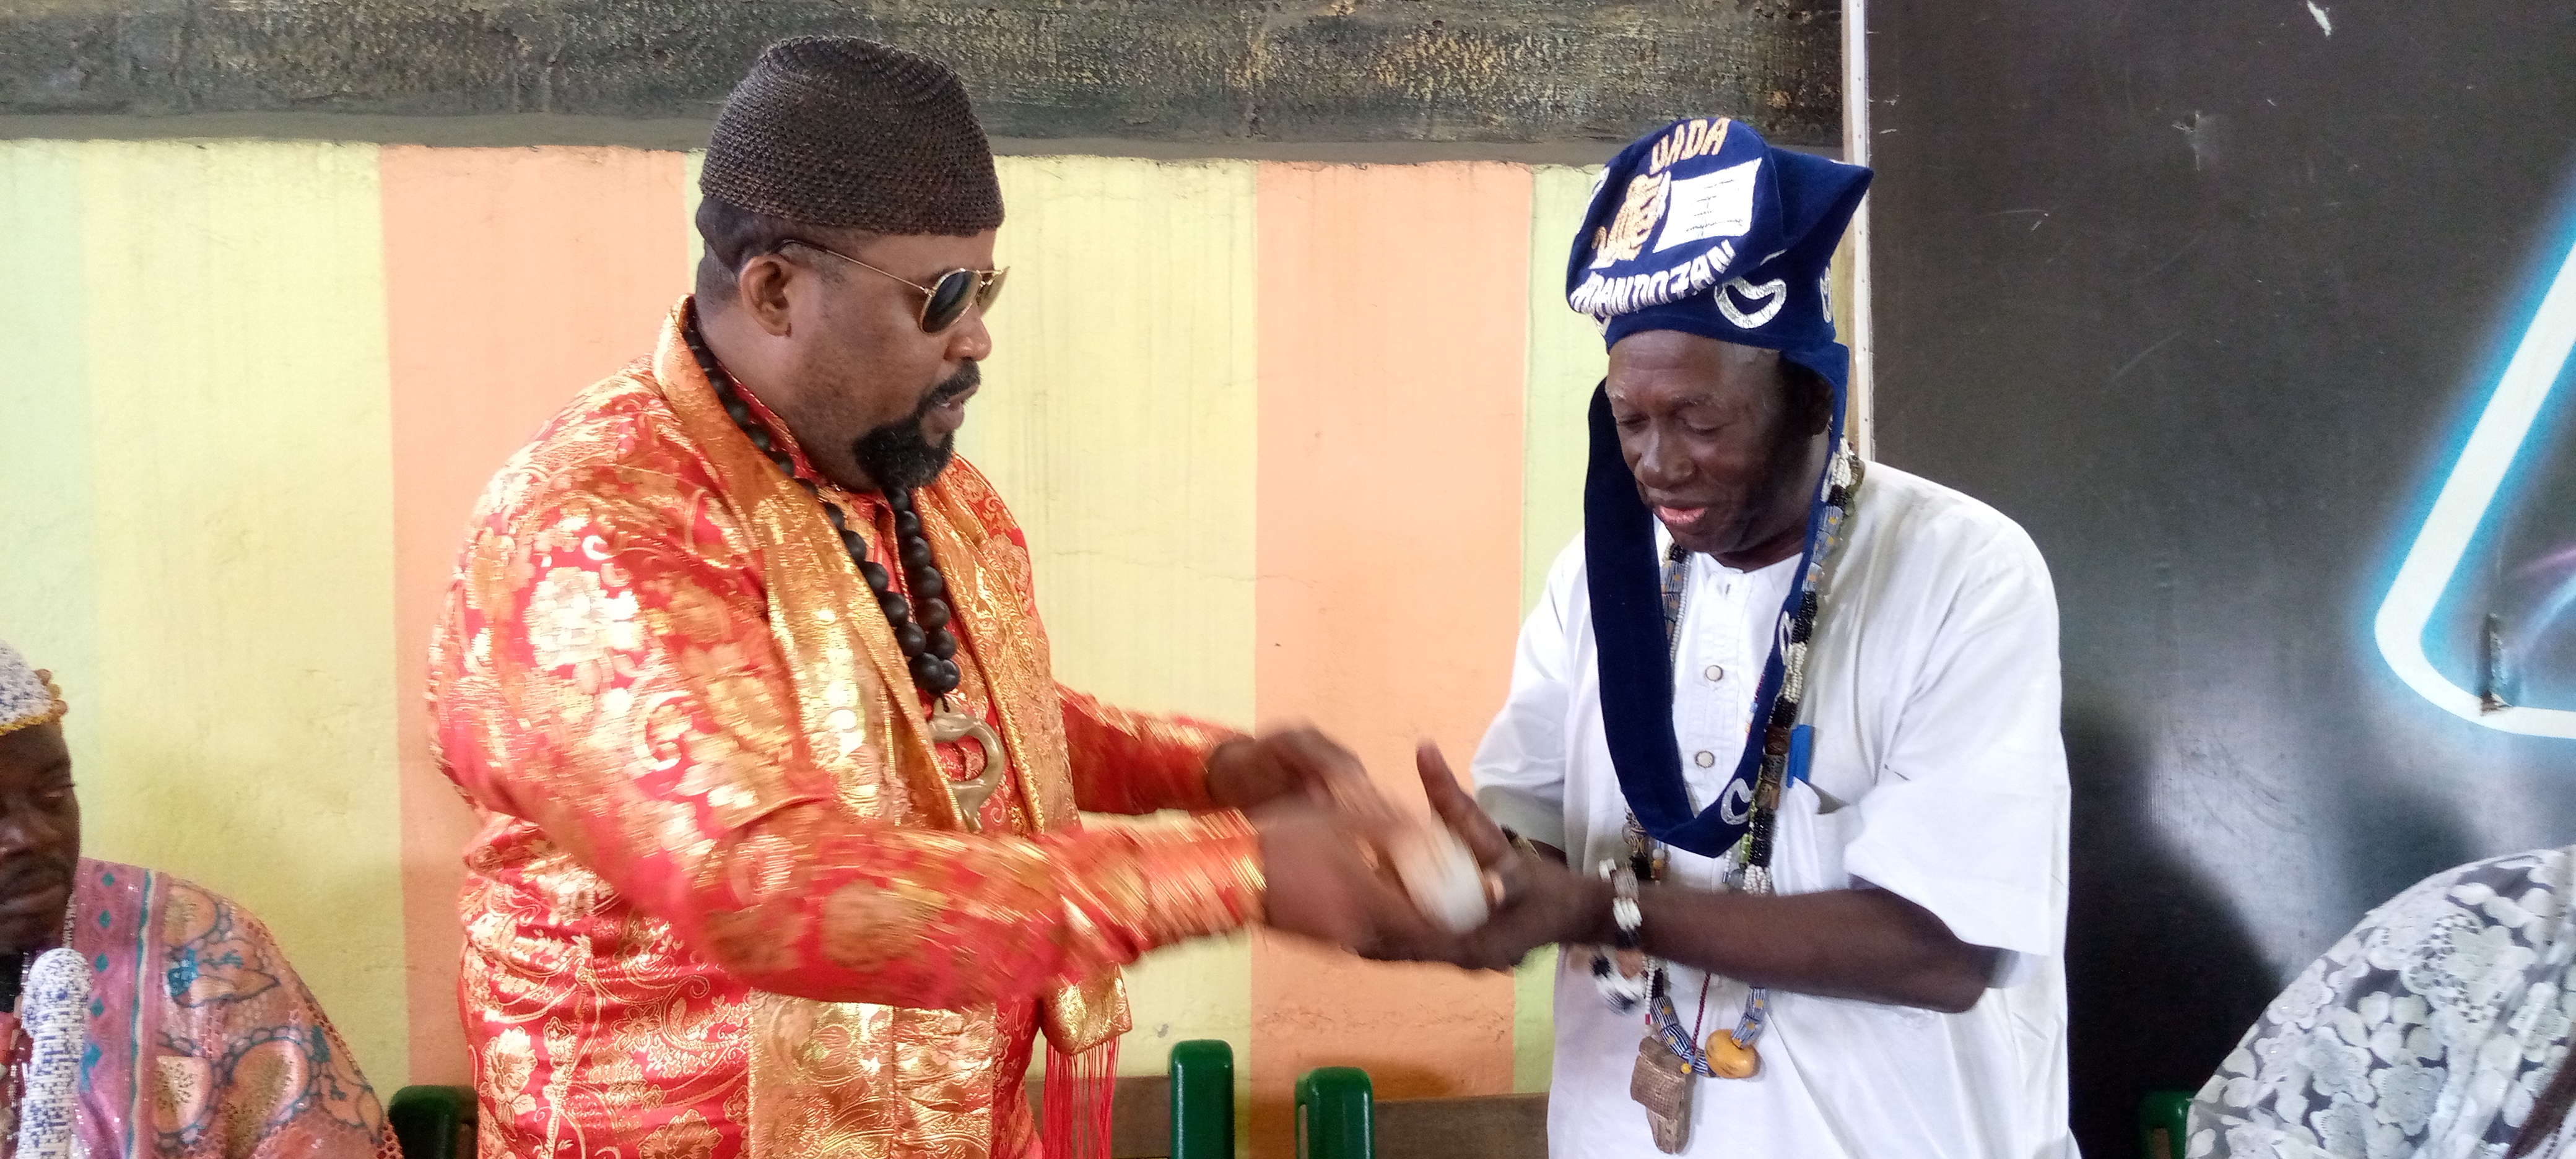 Chefferie traditionnelle au Benin : Sa Majesté ADANDOZAN Gbèdonoukoun Hèmakoun et son équipe aux commandes